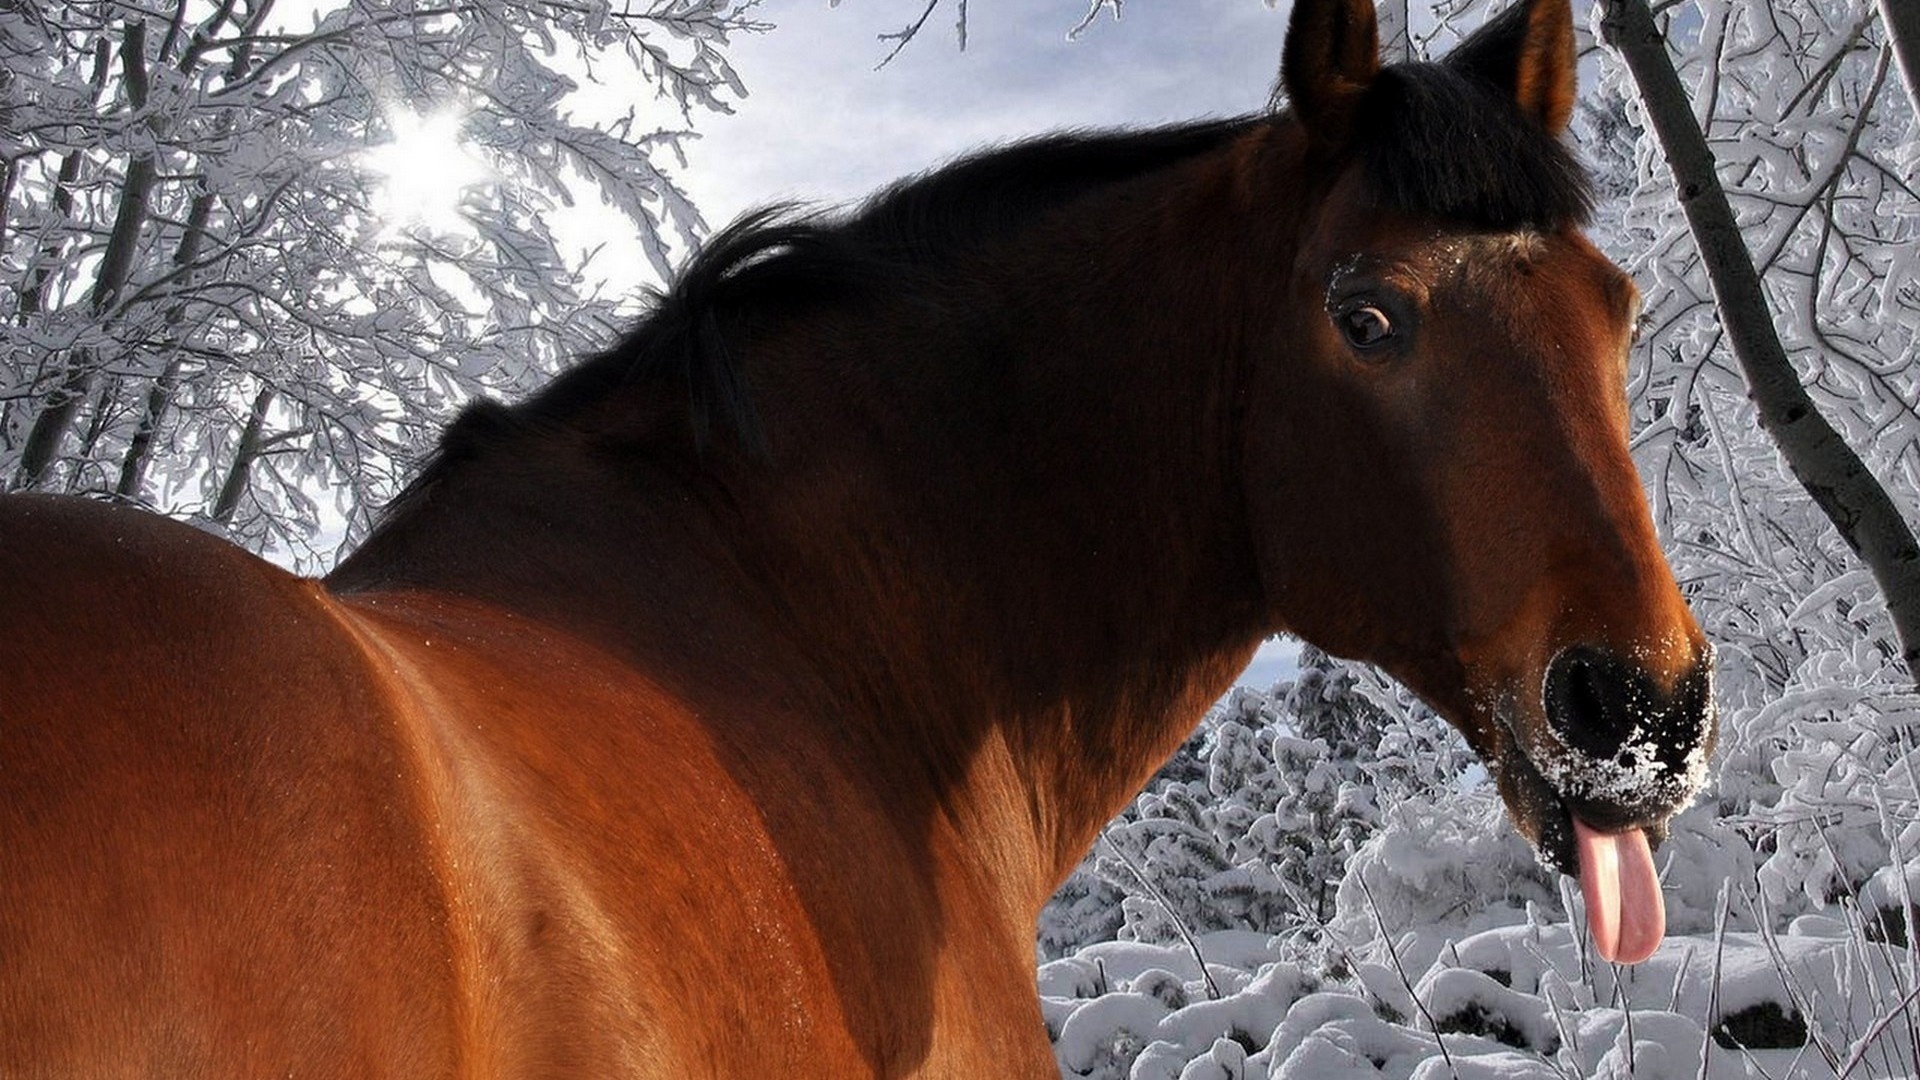 fond d'écran hd cheval qui tire la langue dans la neige